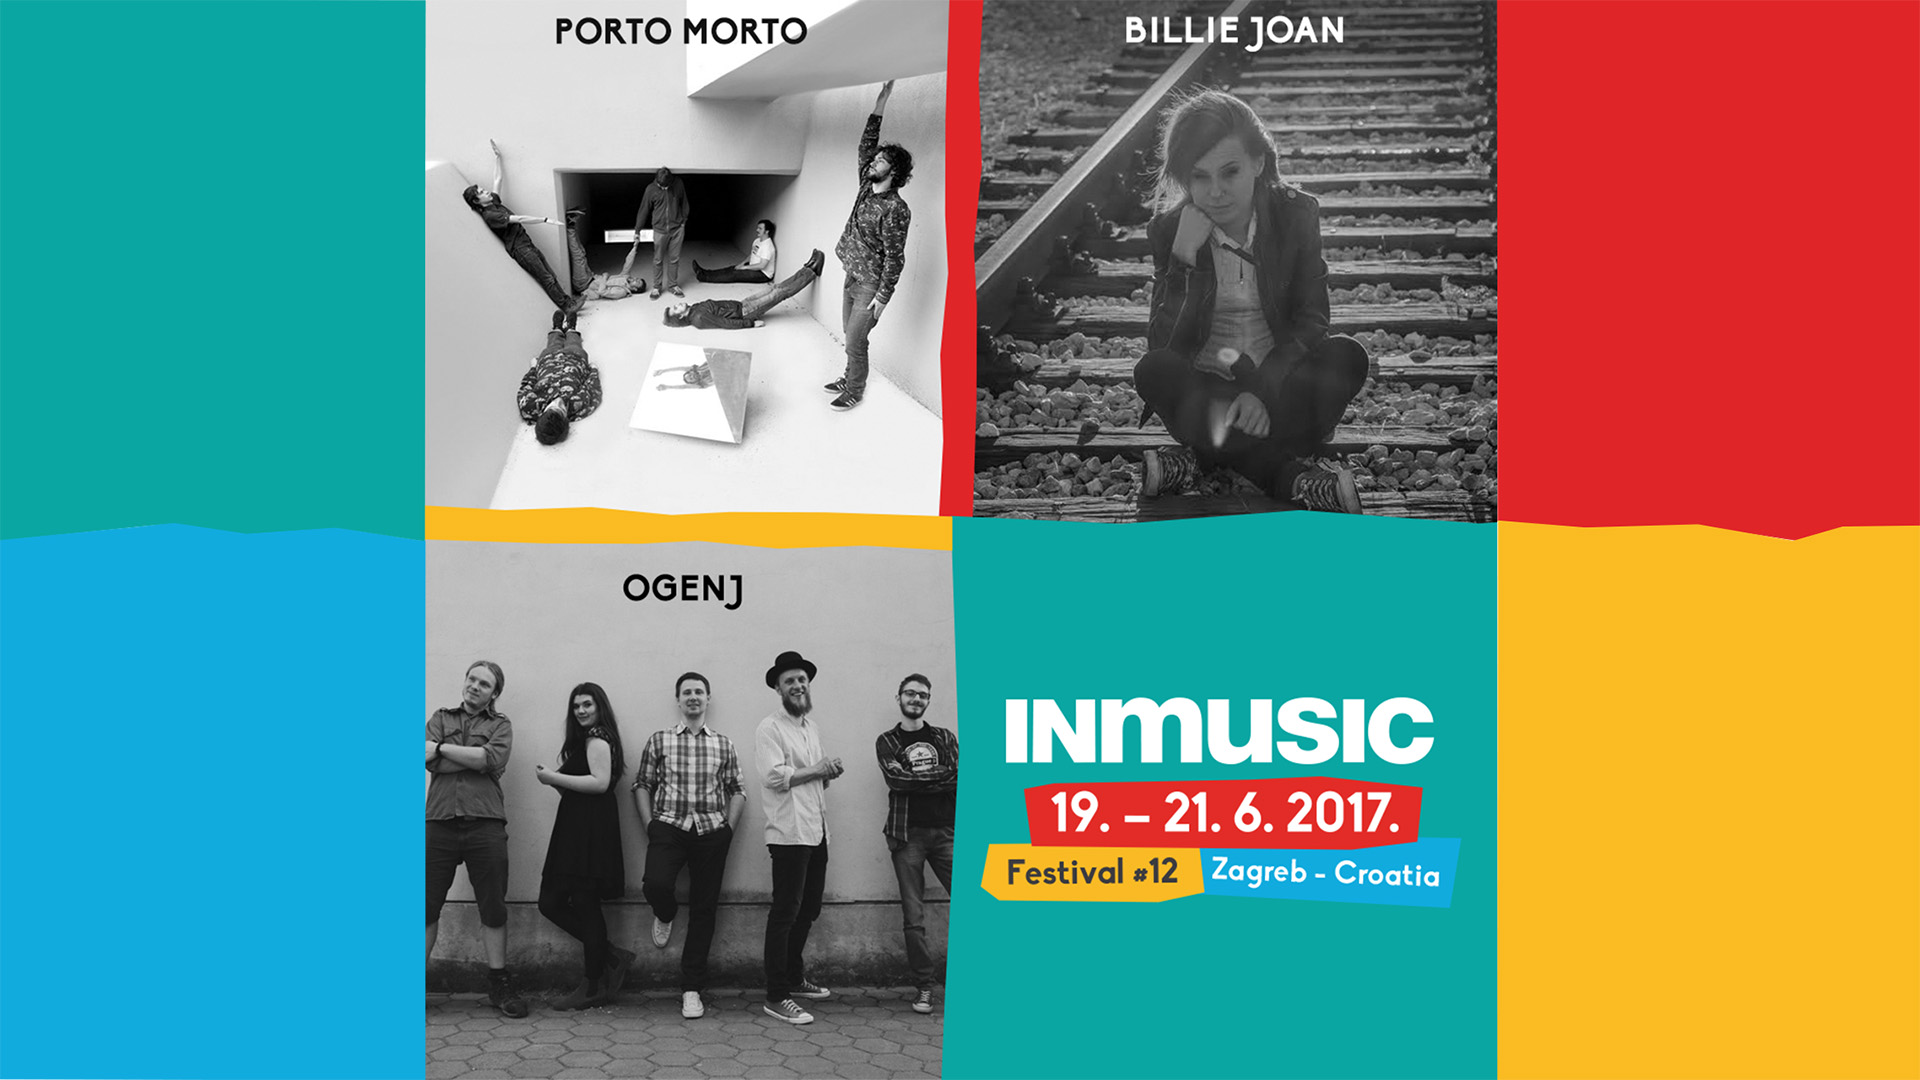 12th inmusic festival billie joan 2017 2